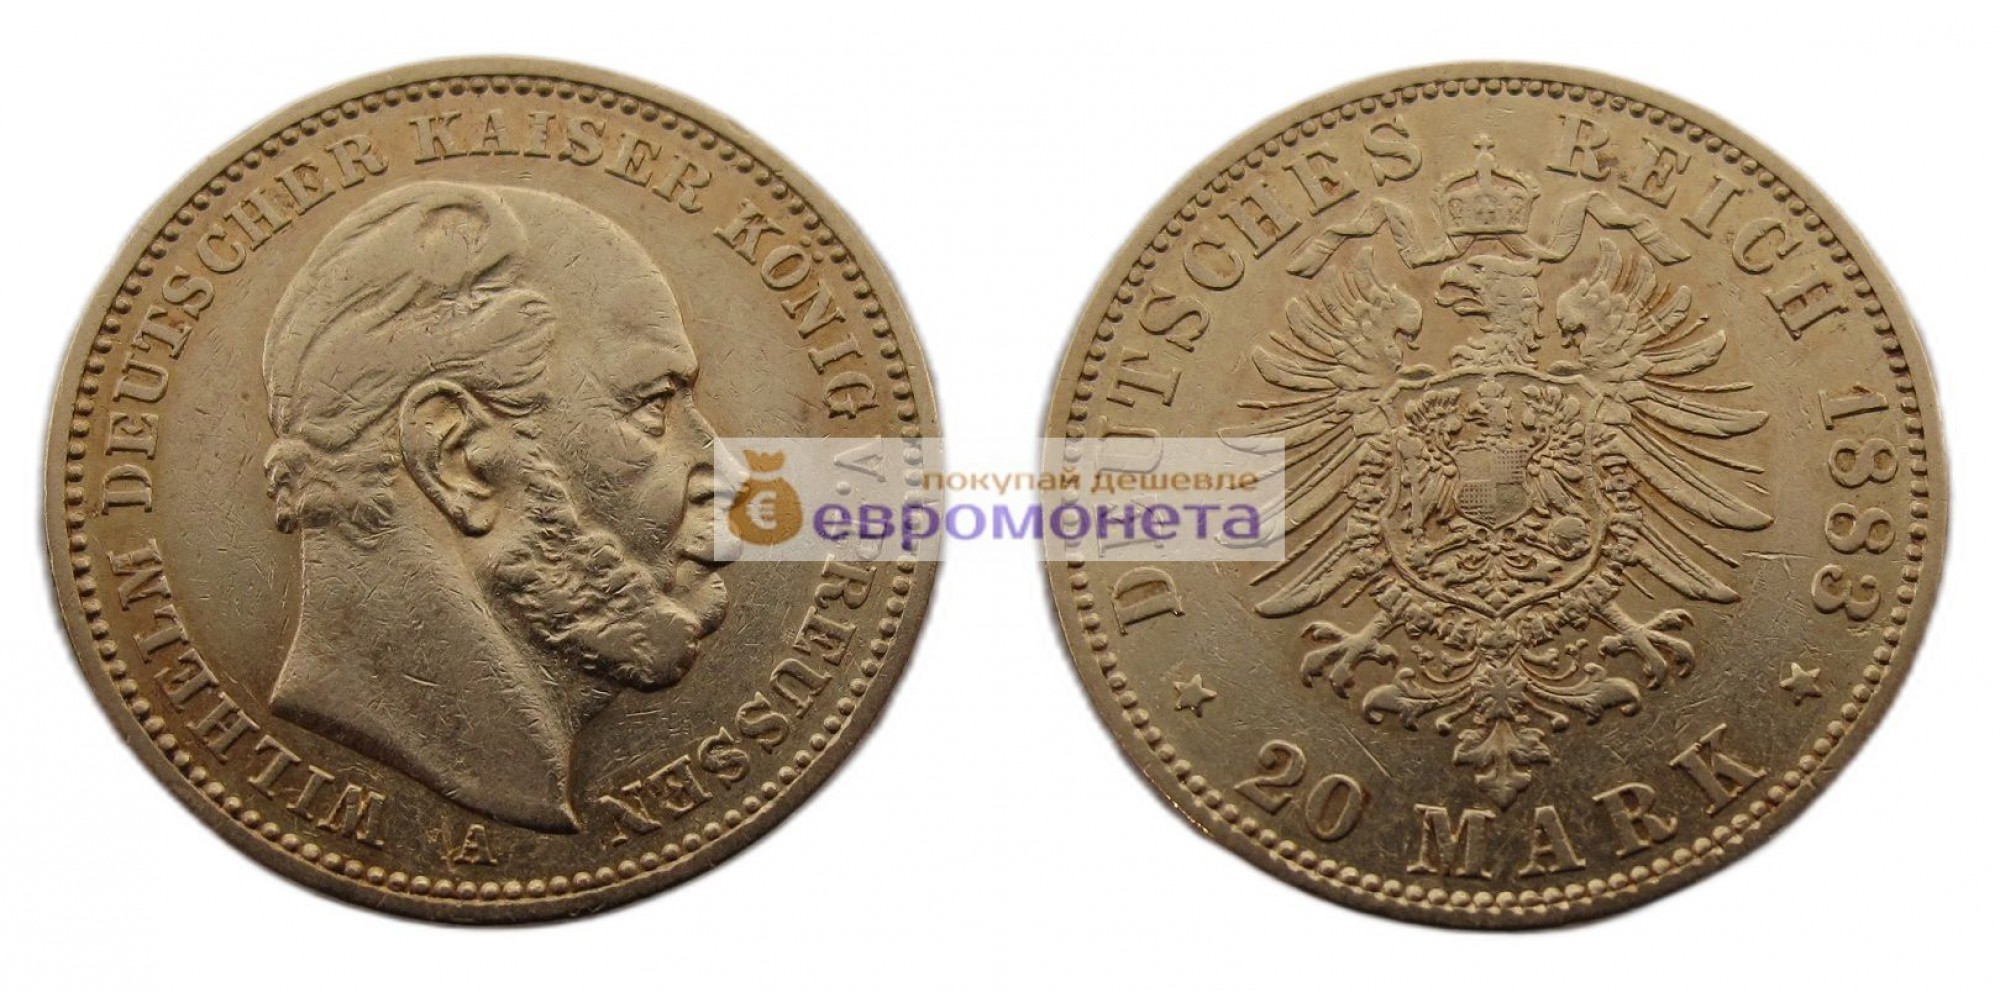 Германская империя Пруссия 20 марок 1883 год "A" Вильгельм I. Золото